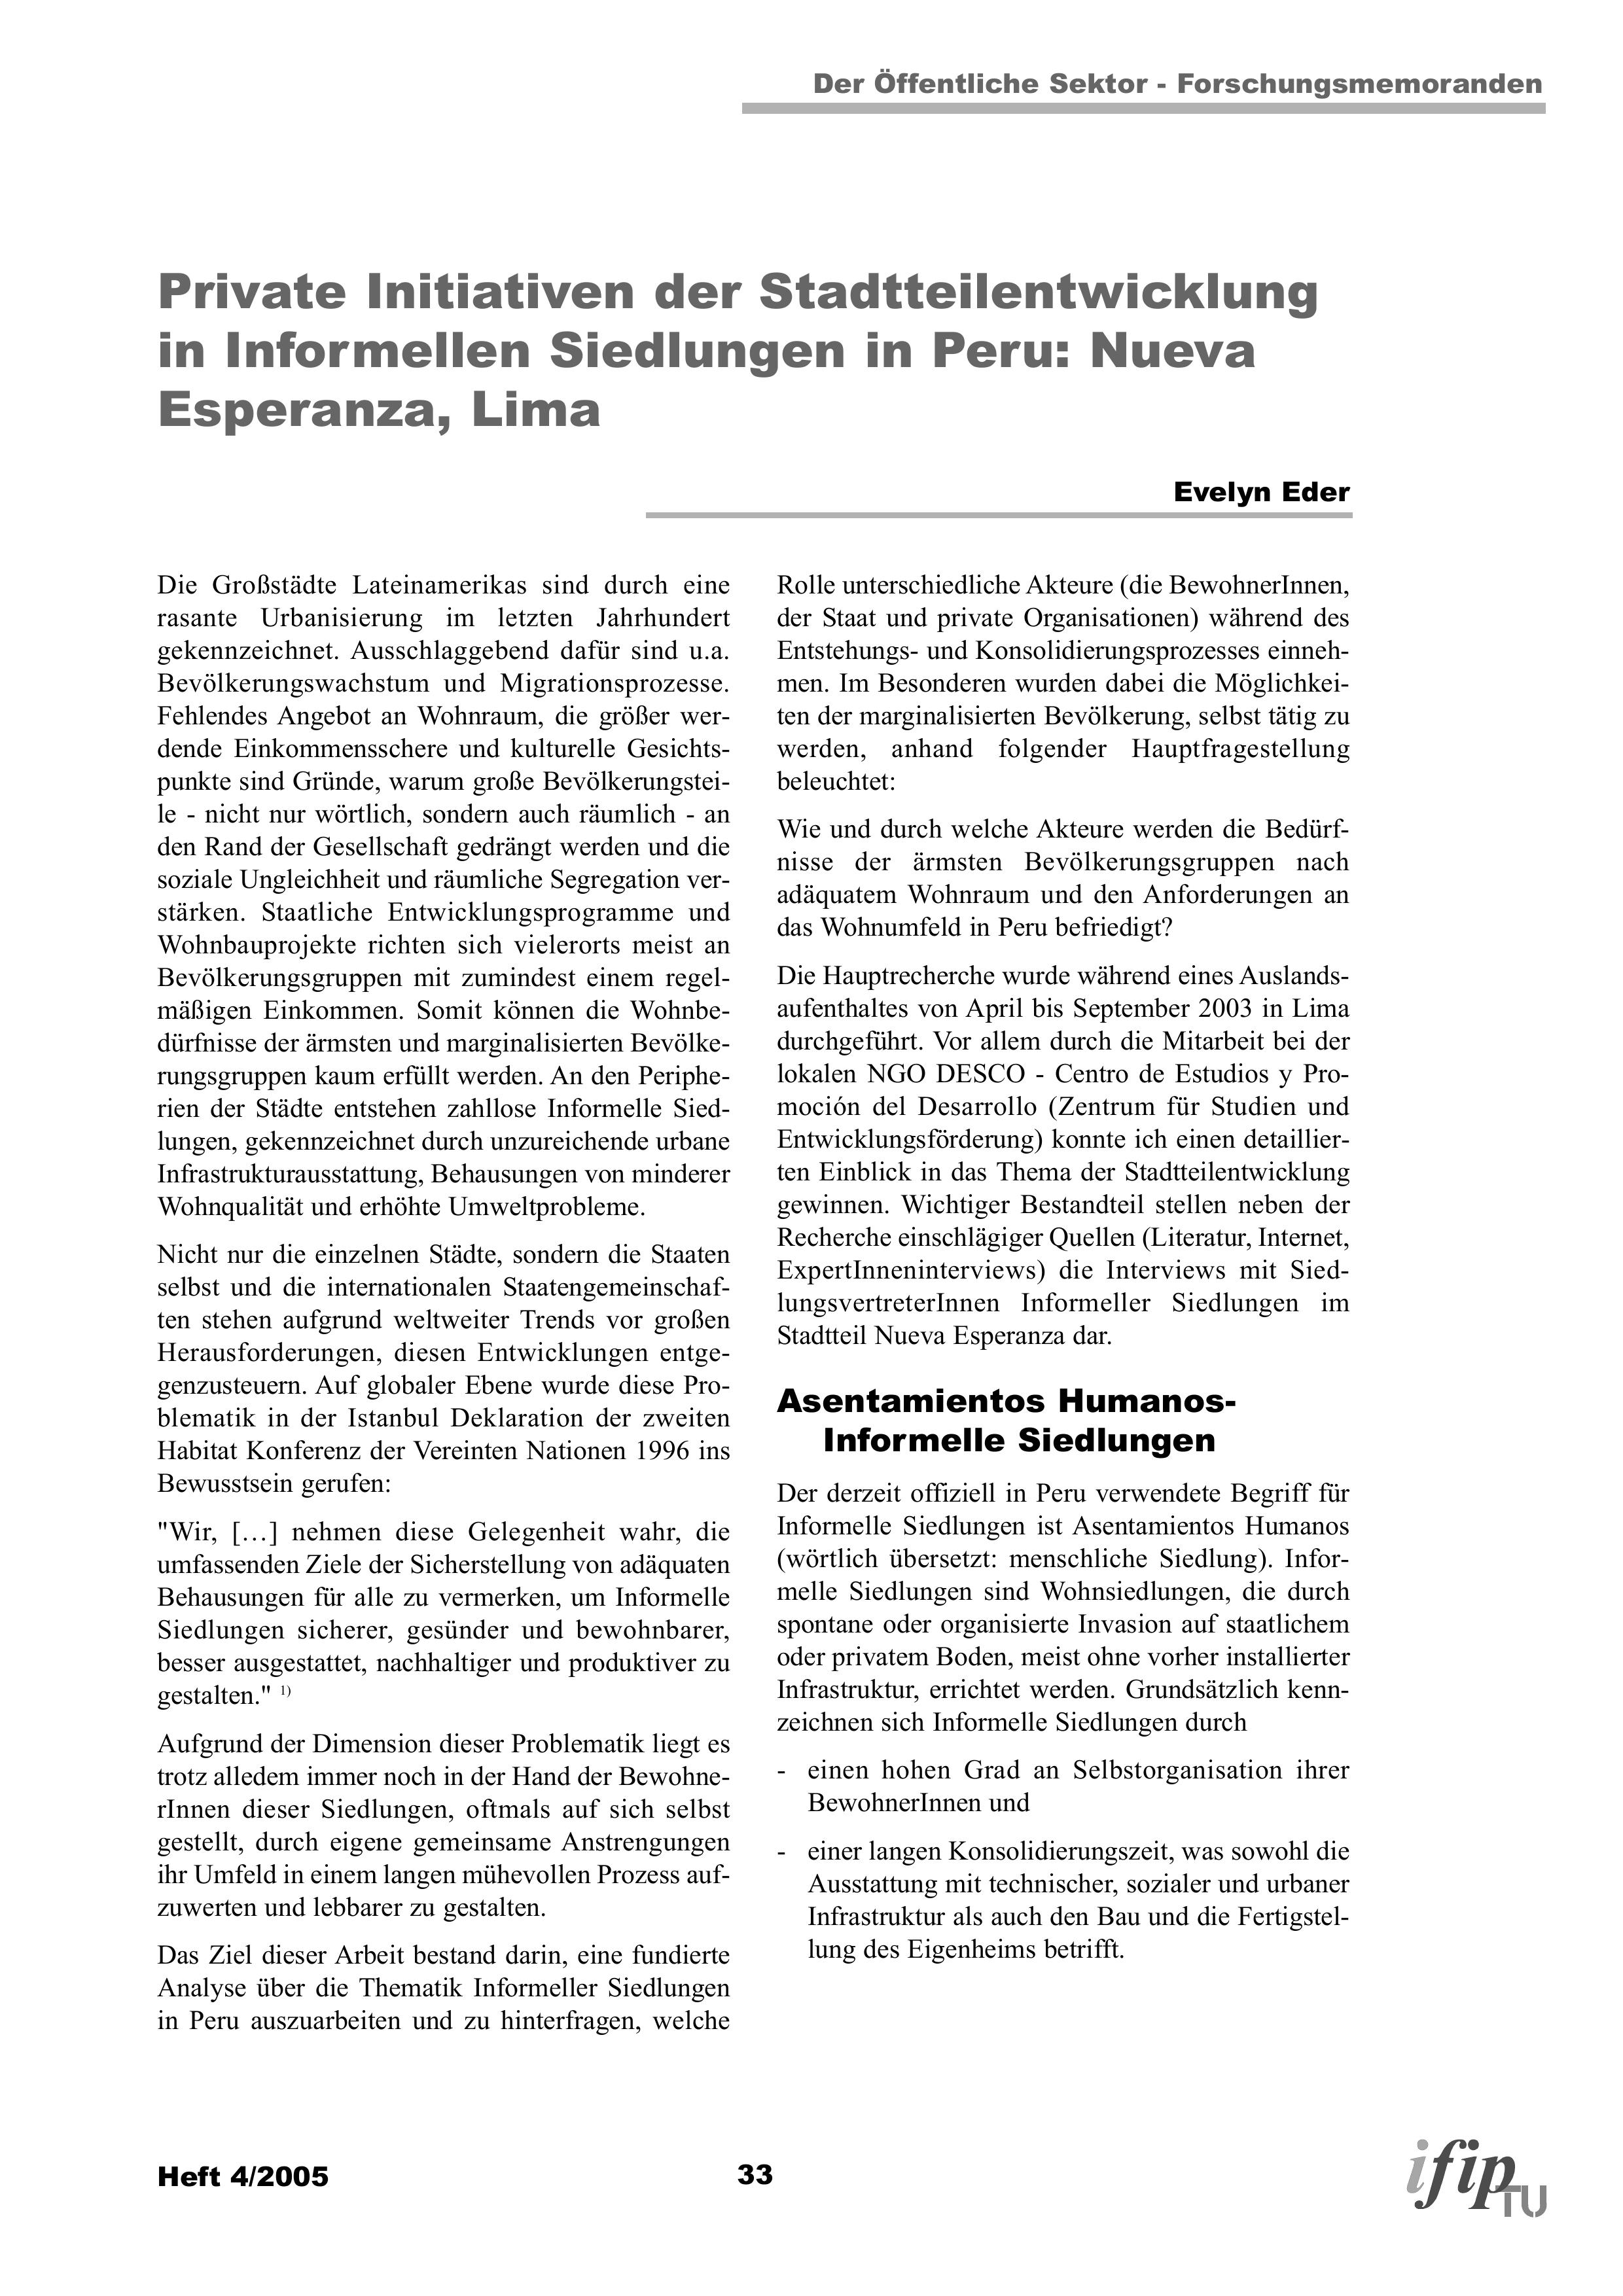 Private Initiativen der Stadtteilentwicklung in Informellen Siedlungen in Peru: Nueva Esperanza, Lima